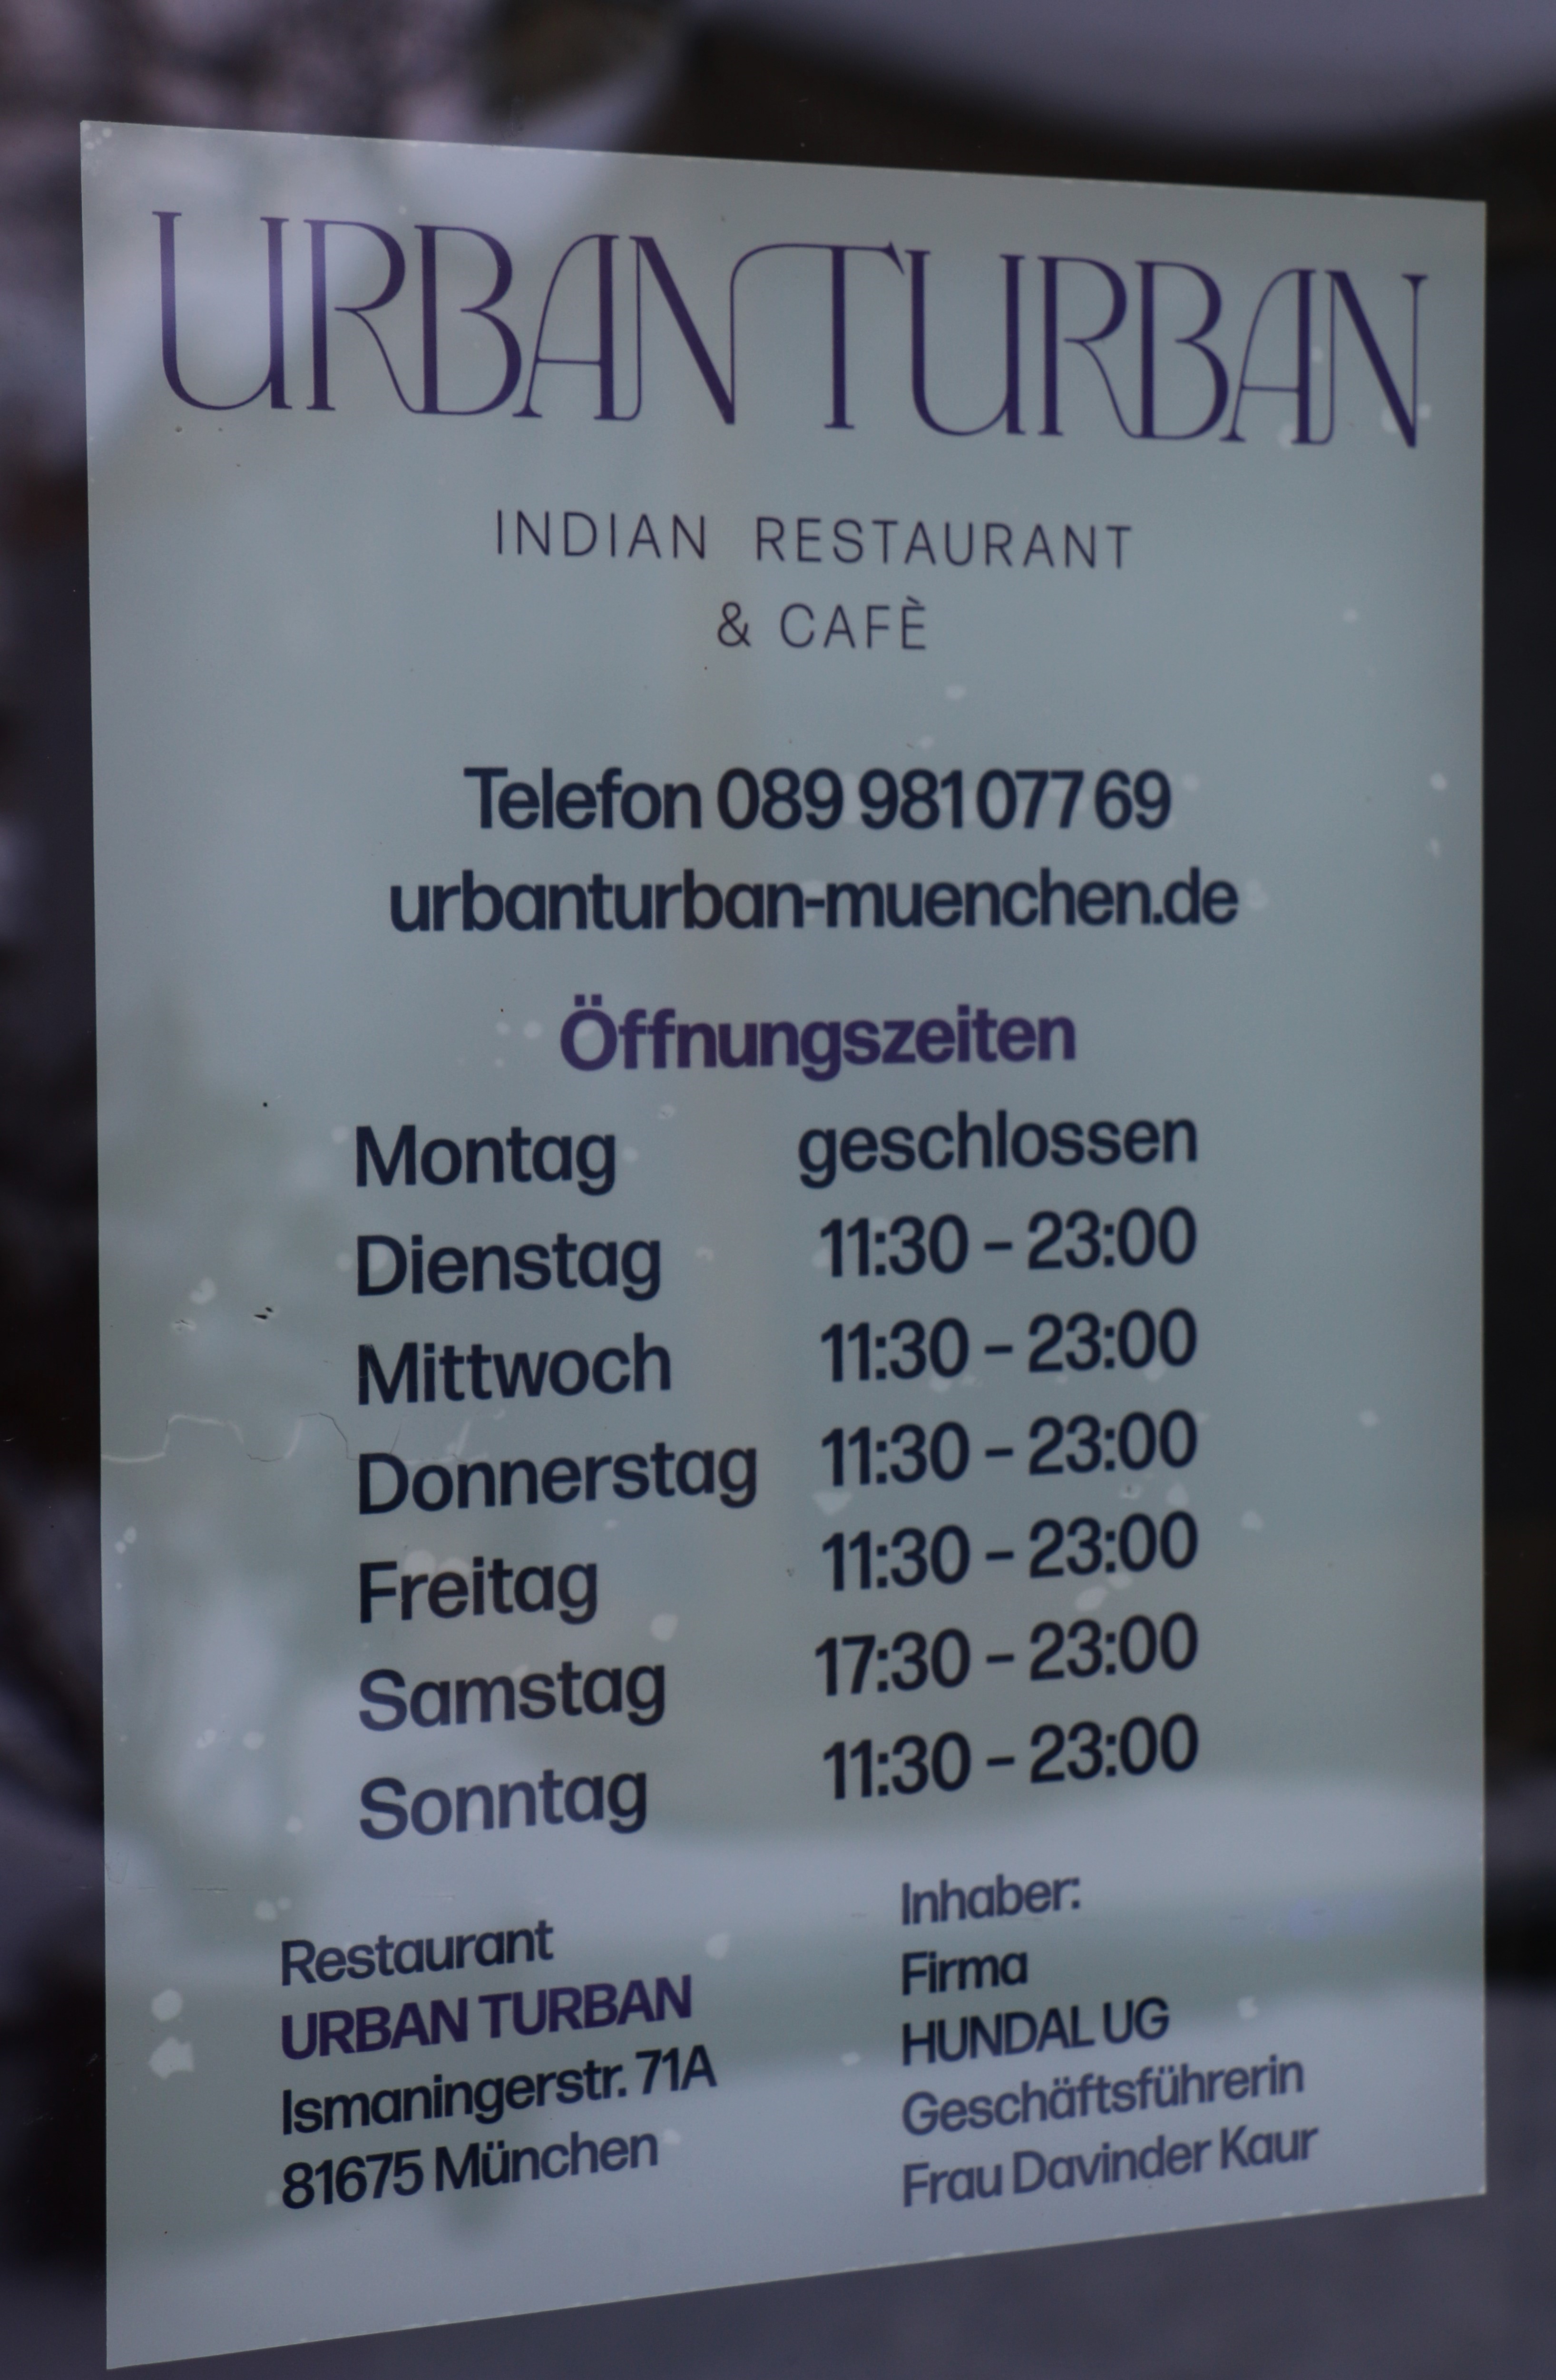 URBAN TURBAN - Indian Restaurant & Cafe, Ismaningerstraße 71A in München